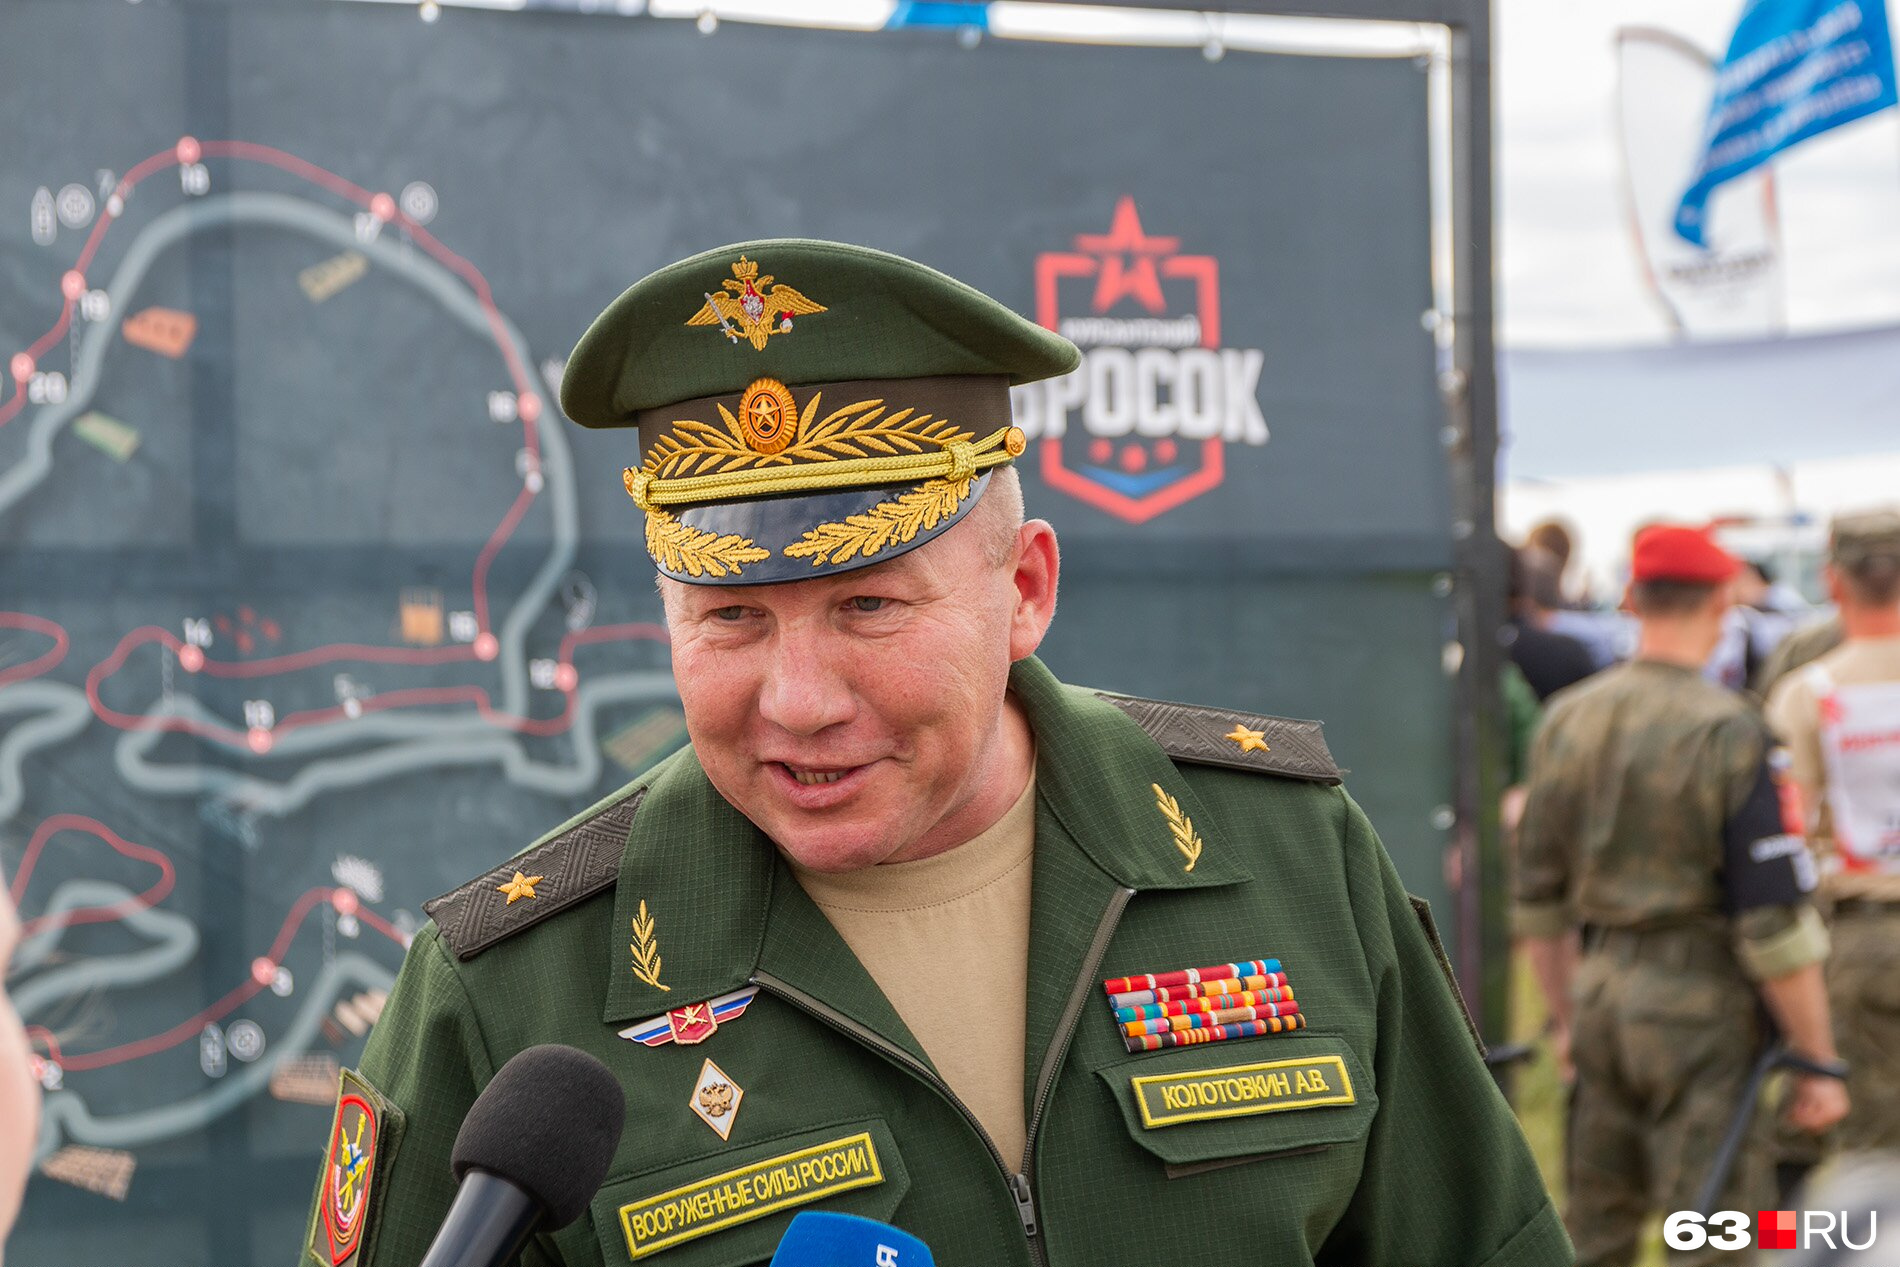 Командующий Второй гвардейской армией, штаб которой находится в Самаре, Андрей Колотовкин